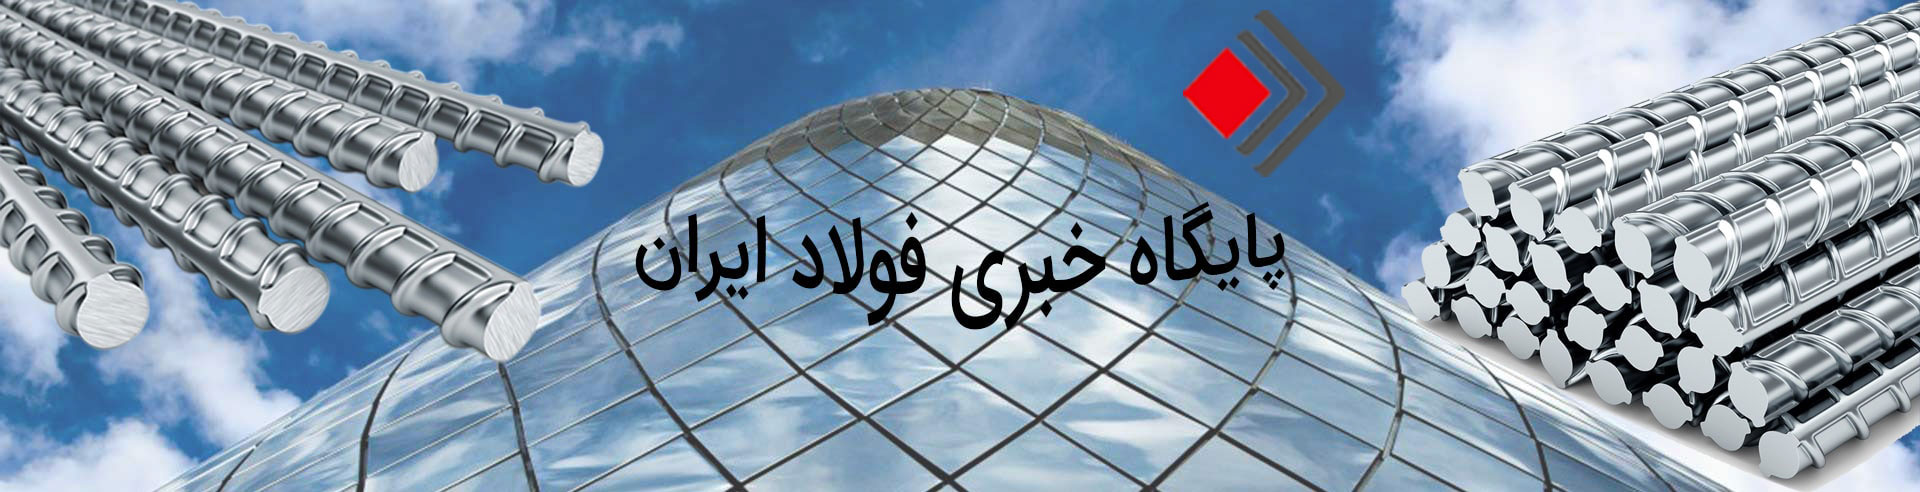 پایگاه خبری فولاد ایران